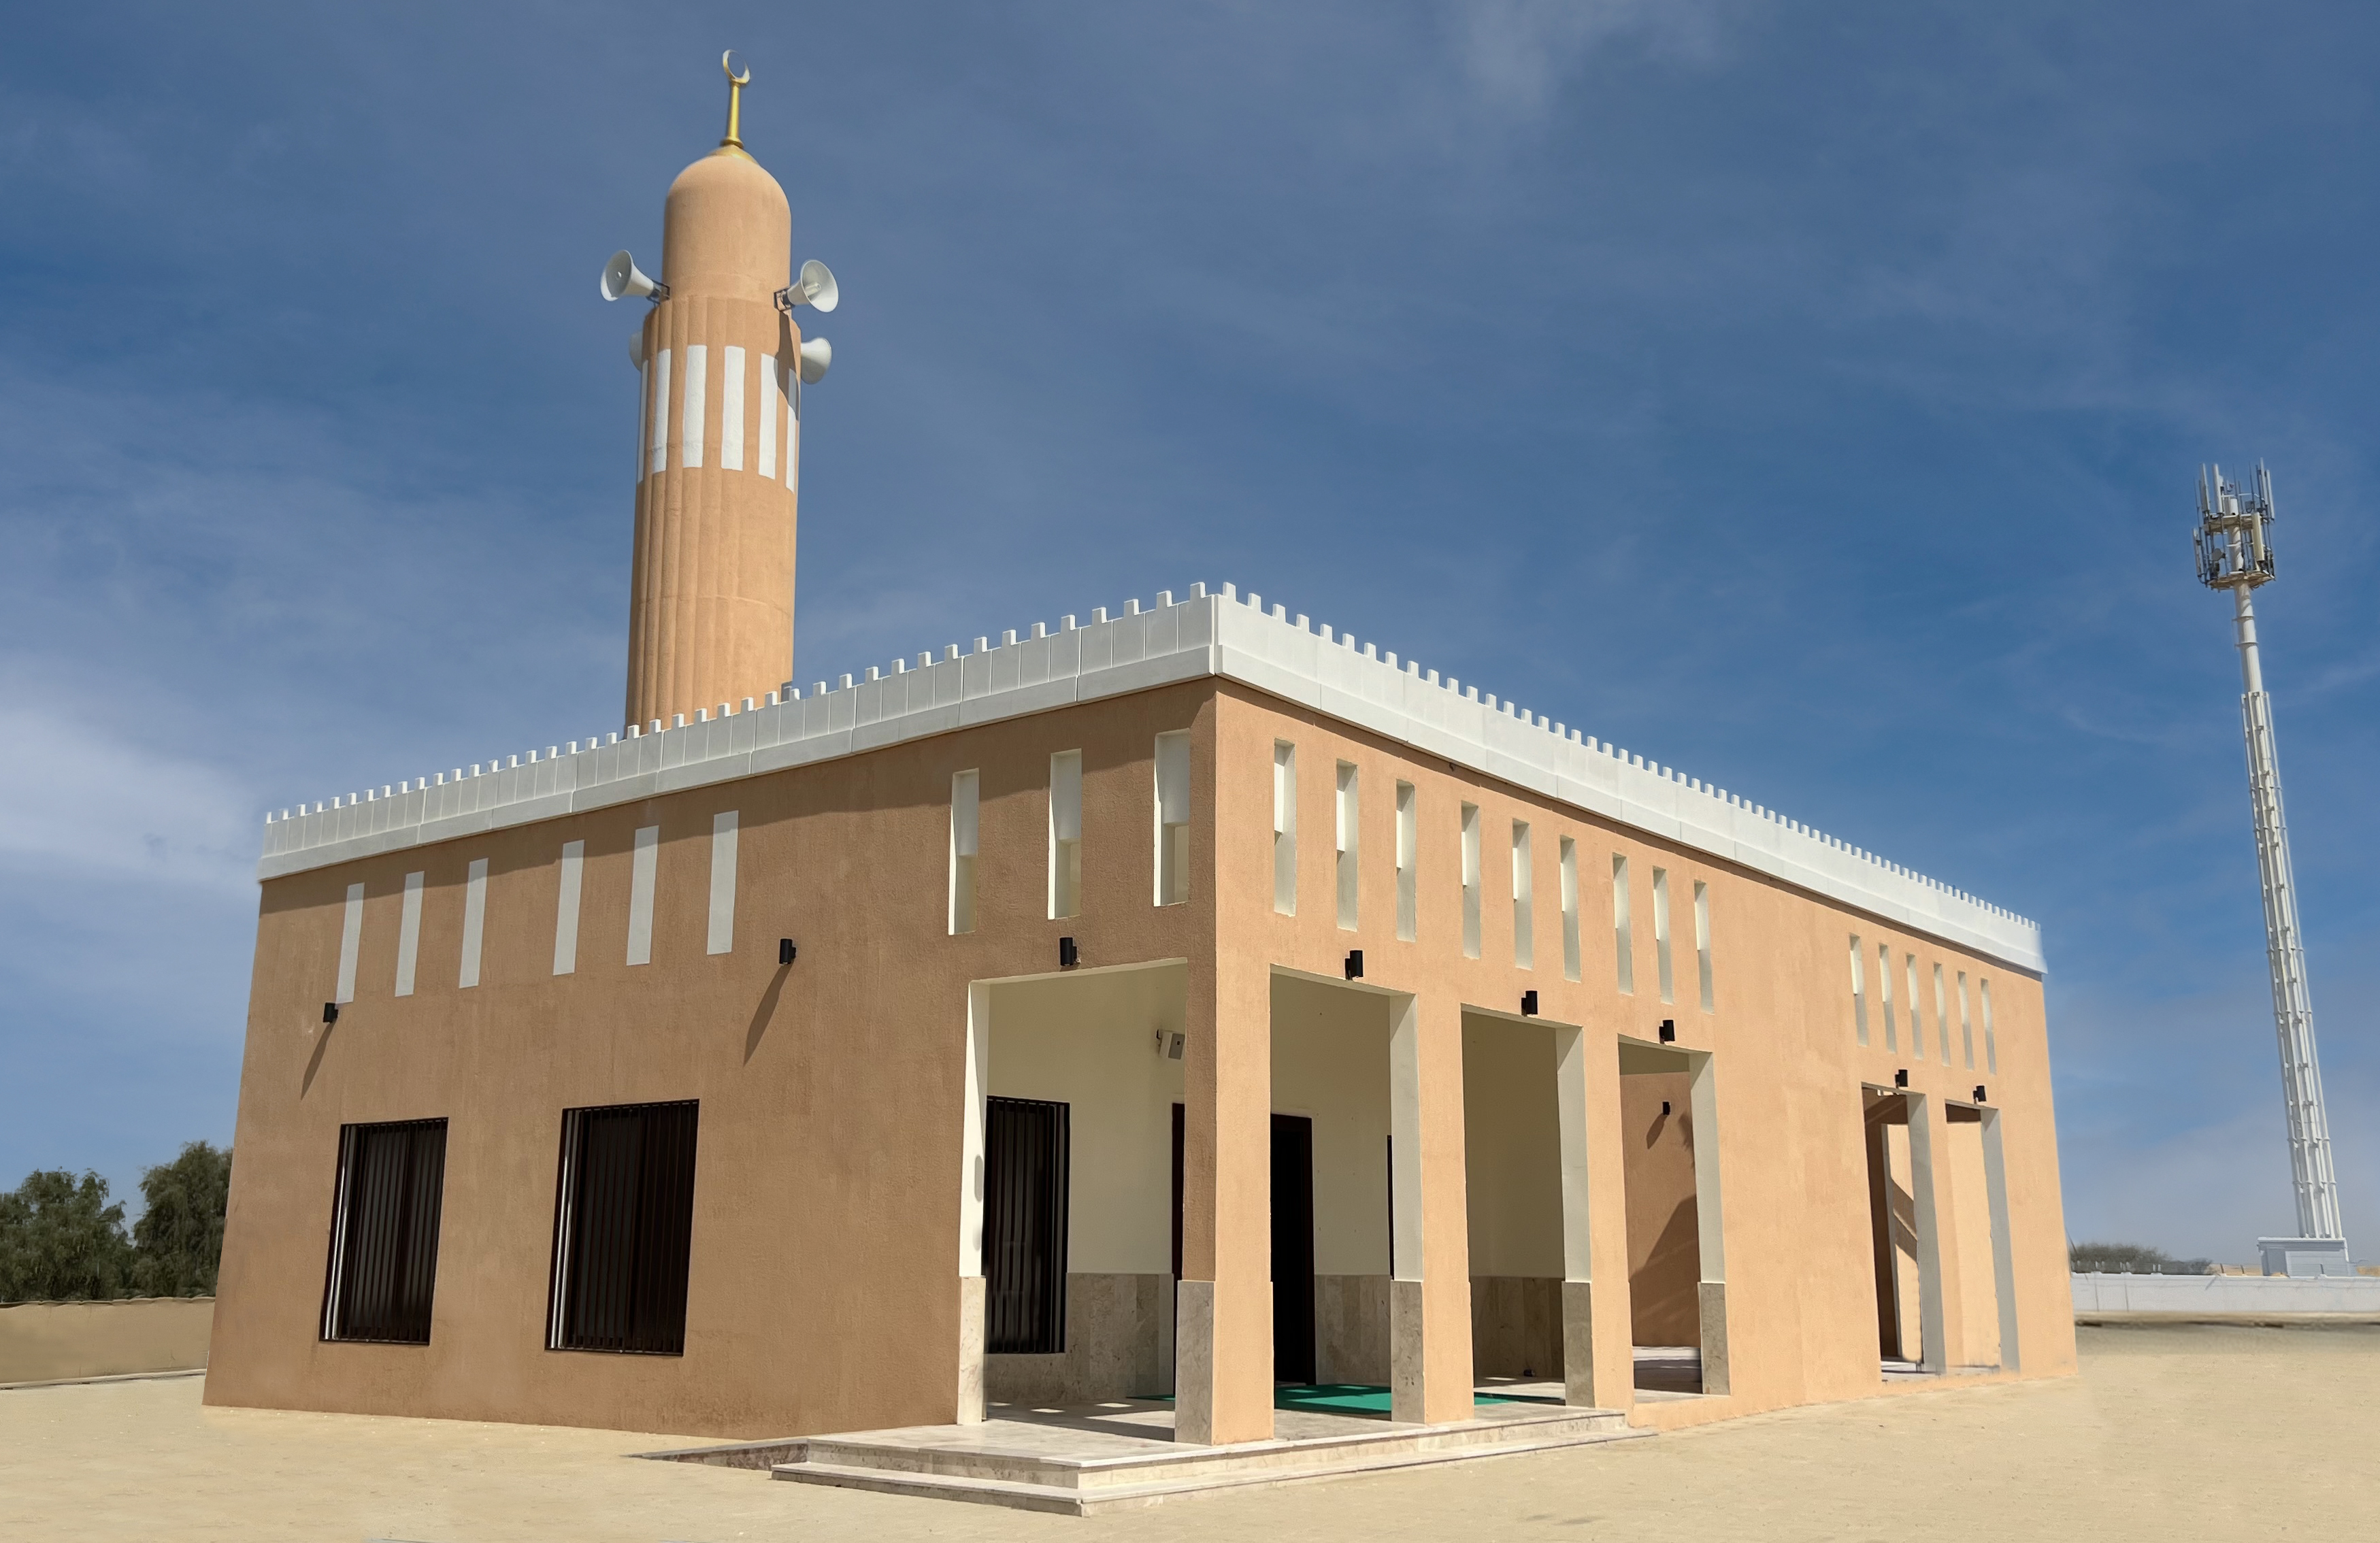 افتتاح مسجد "ذوي القربى" بمنطقة قطاة الزراعية في الشارقة